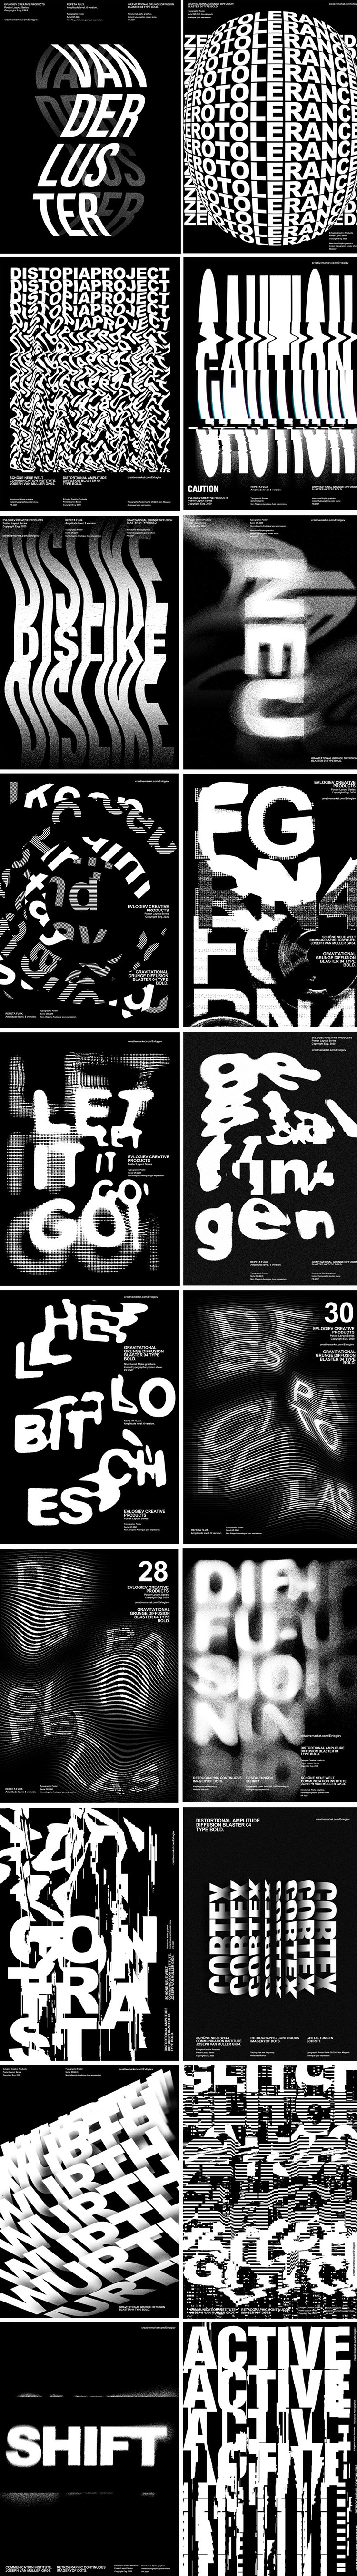 扭曲旋转创意文字抽象字体特效海报模板PSD智能图层设计素材 图片素材 第2张